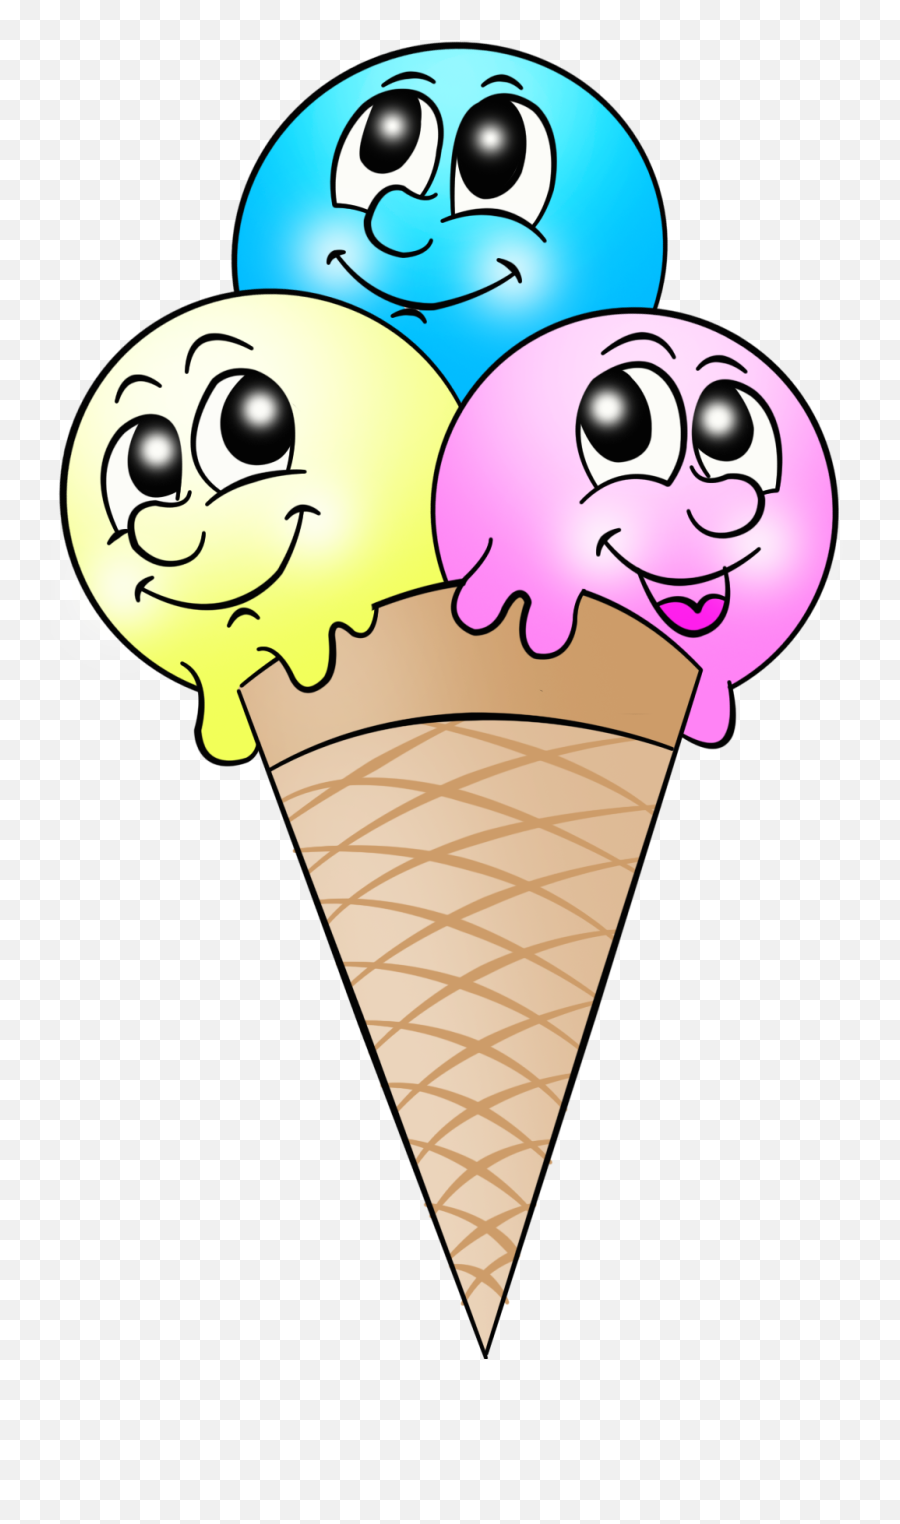 Ice Cream Emoji - Icecream Smily Face Clipart Png Download Ice Cream Face Emoji,Smily Face Emoji